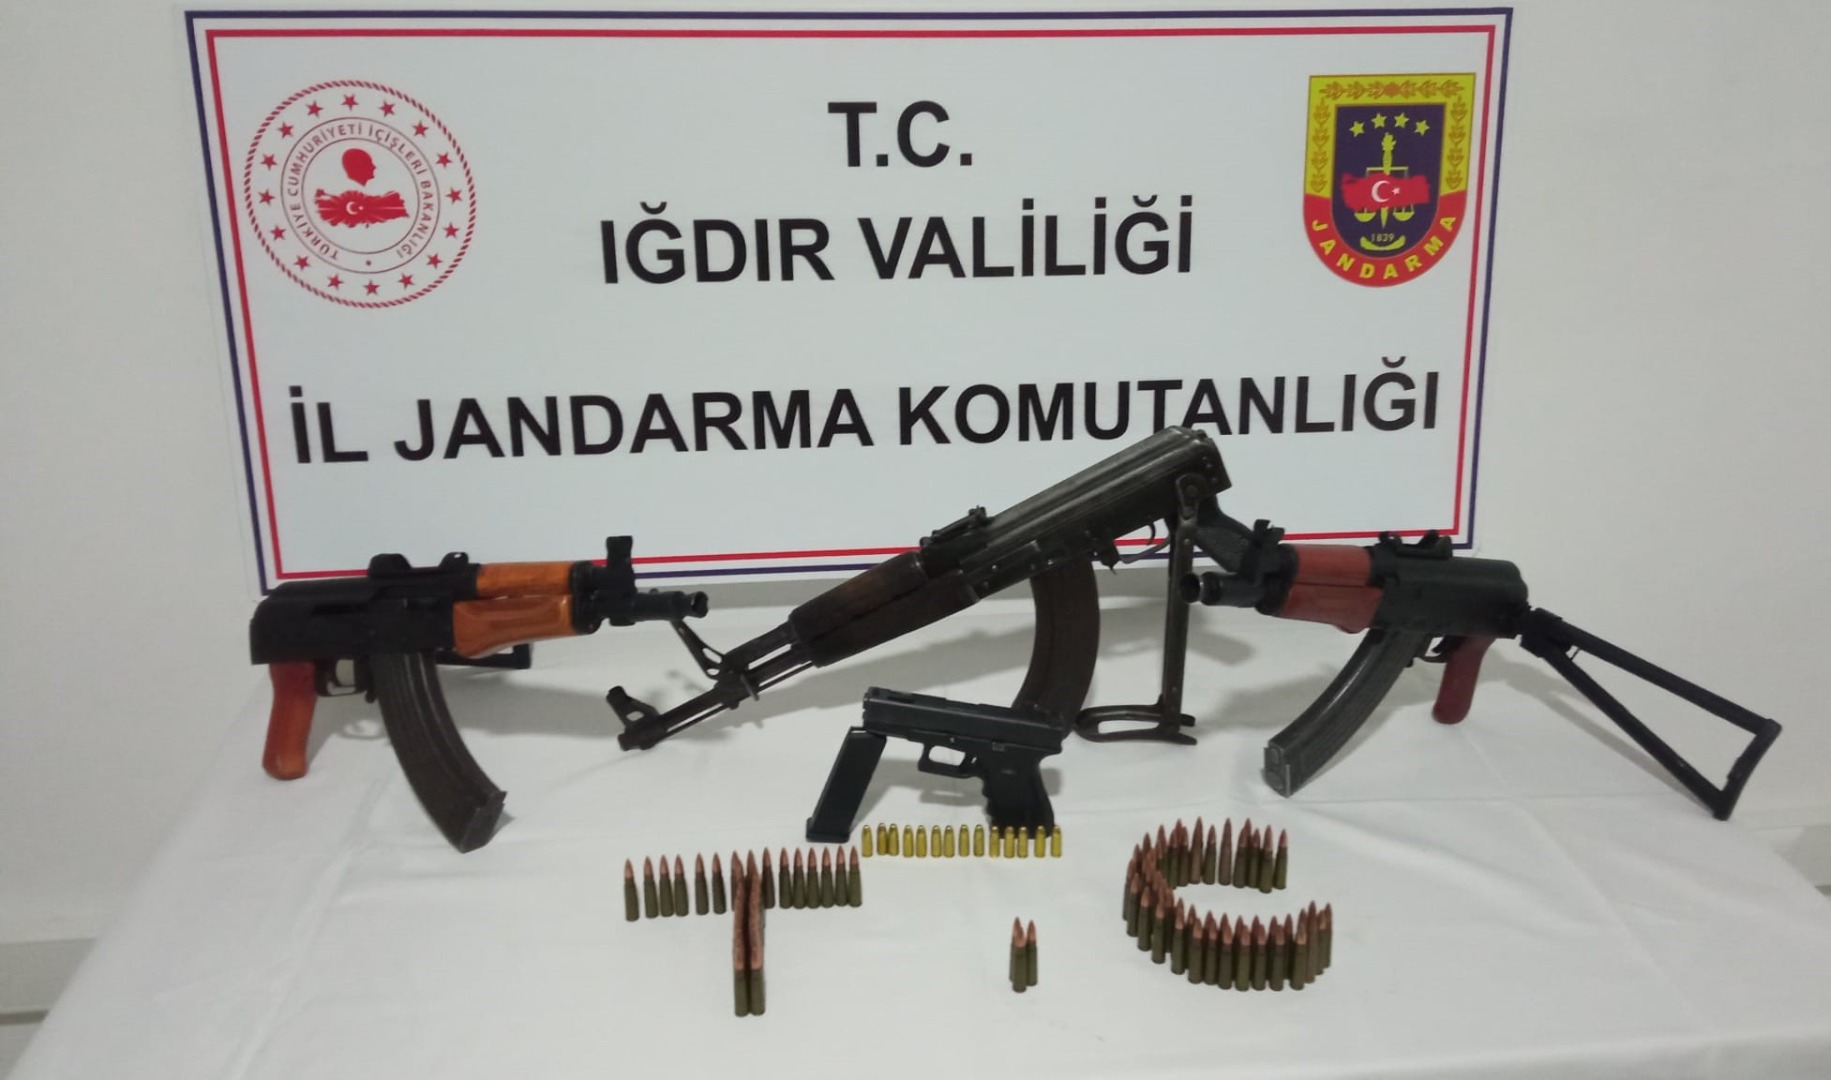 Iğdır'da silah kaçakçılığı operasyonunda 2 şüpheli tutuklandı